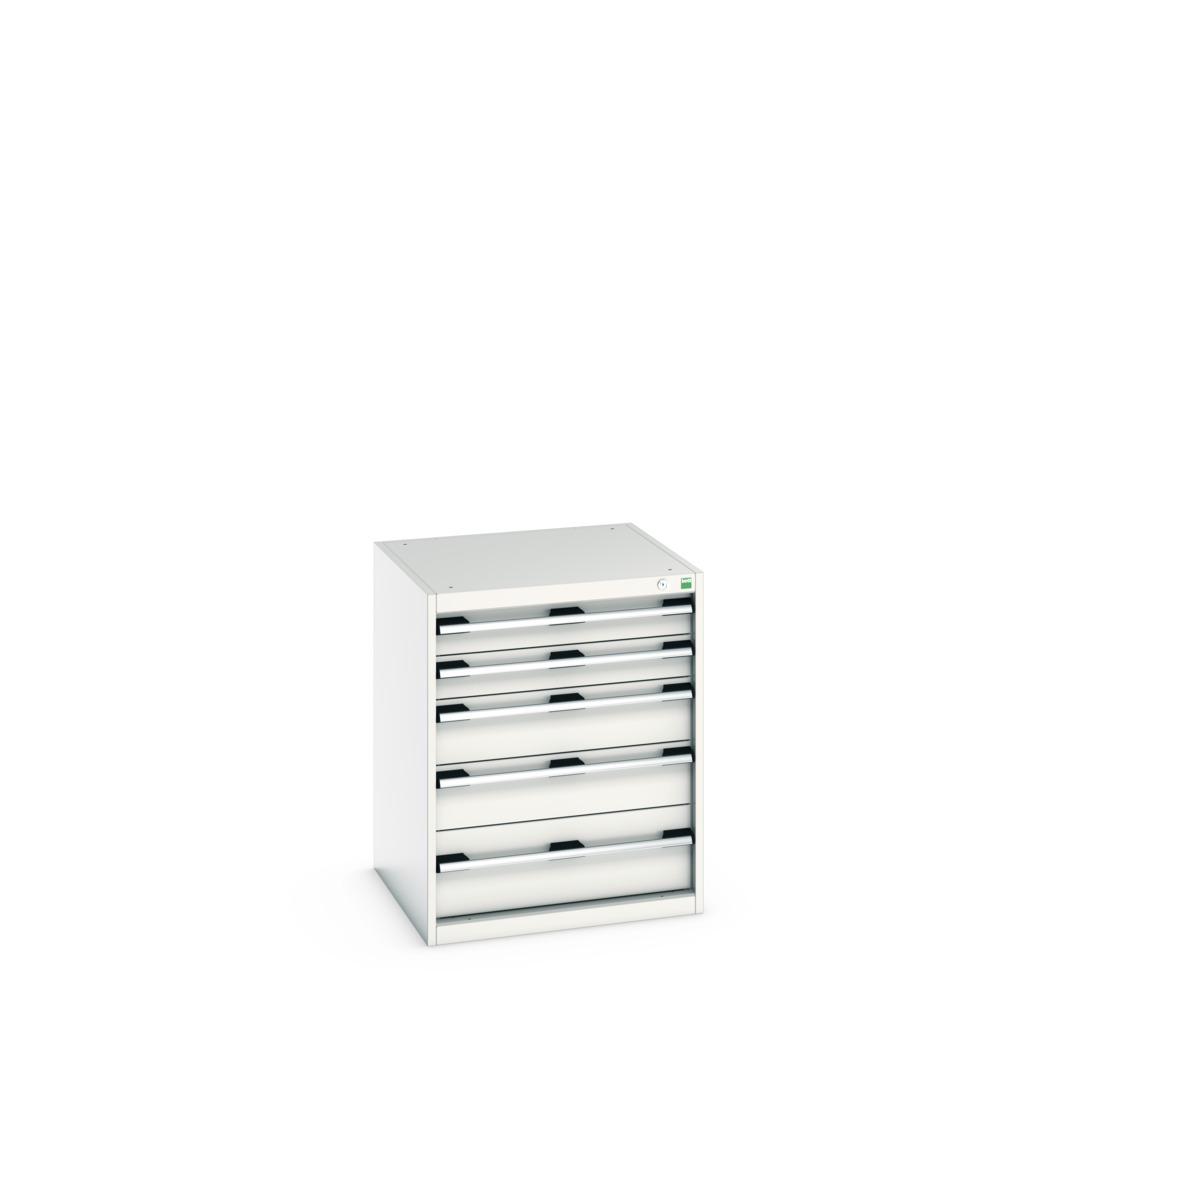 40019035.16V - cubio drawer cabinet